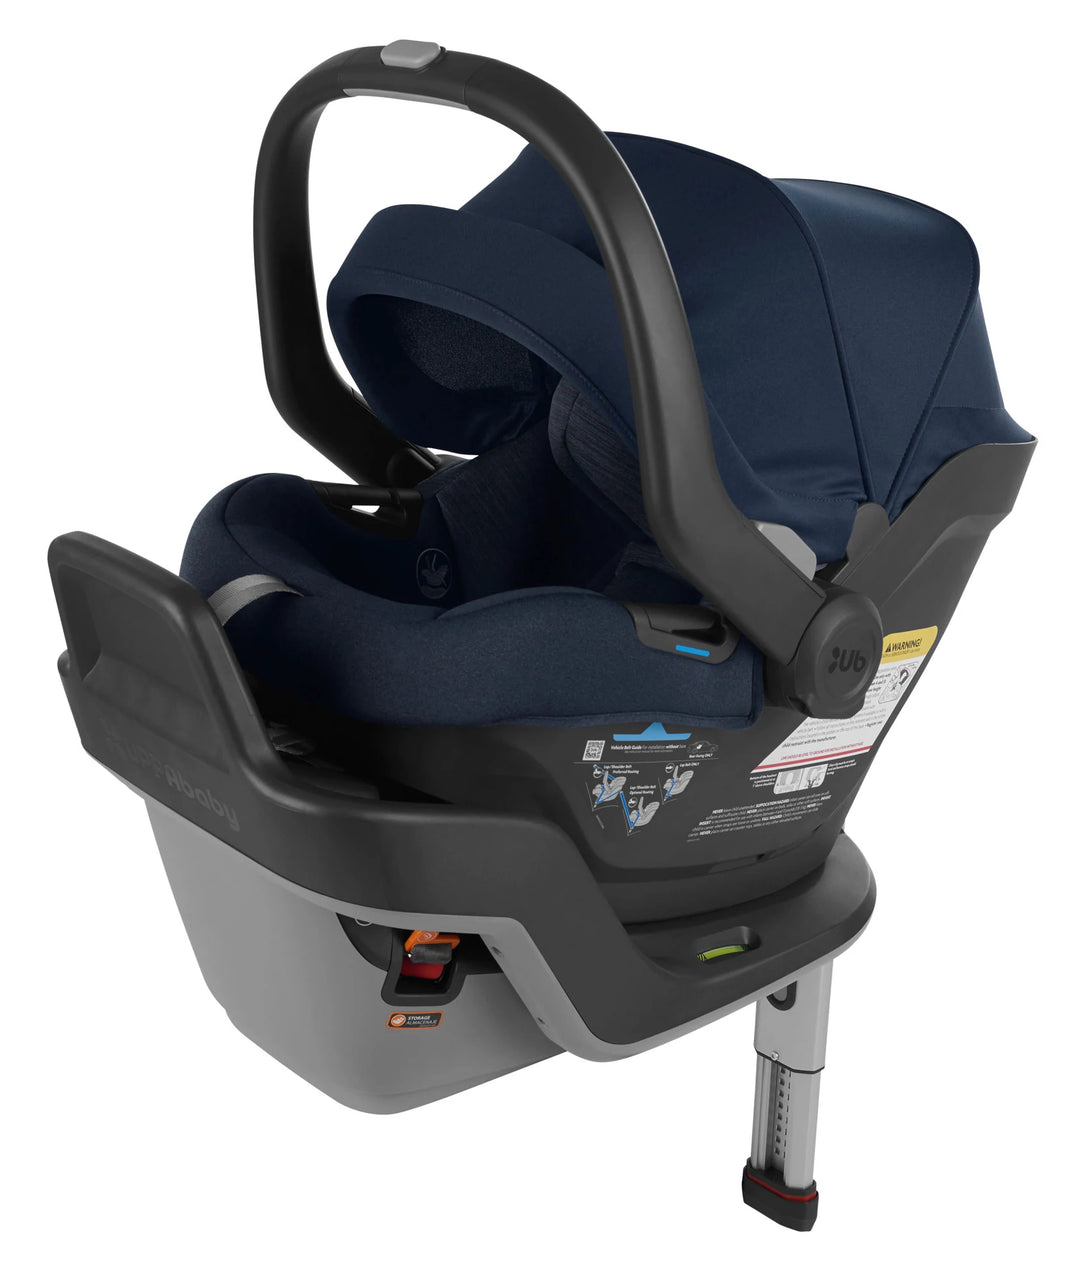 Uppababy Mesa Max Infant Car Seat